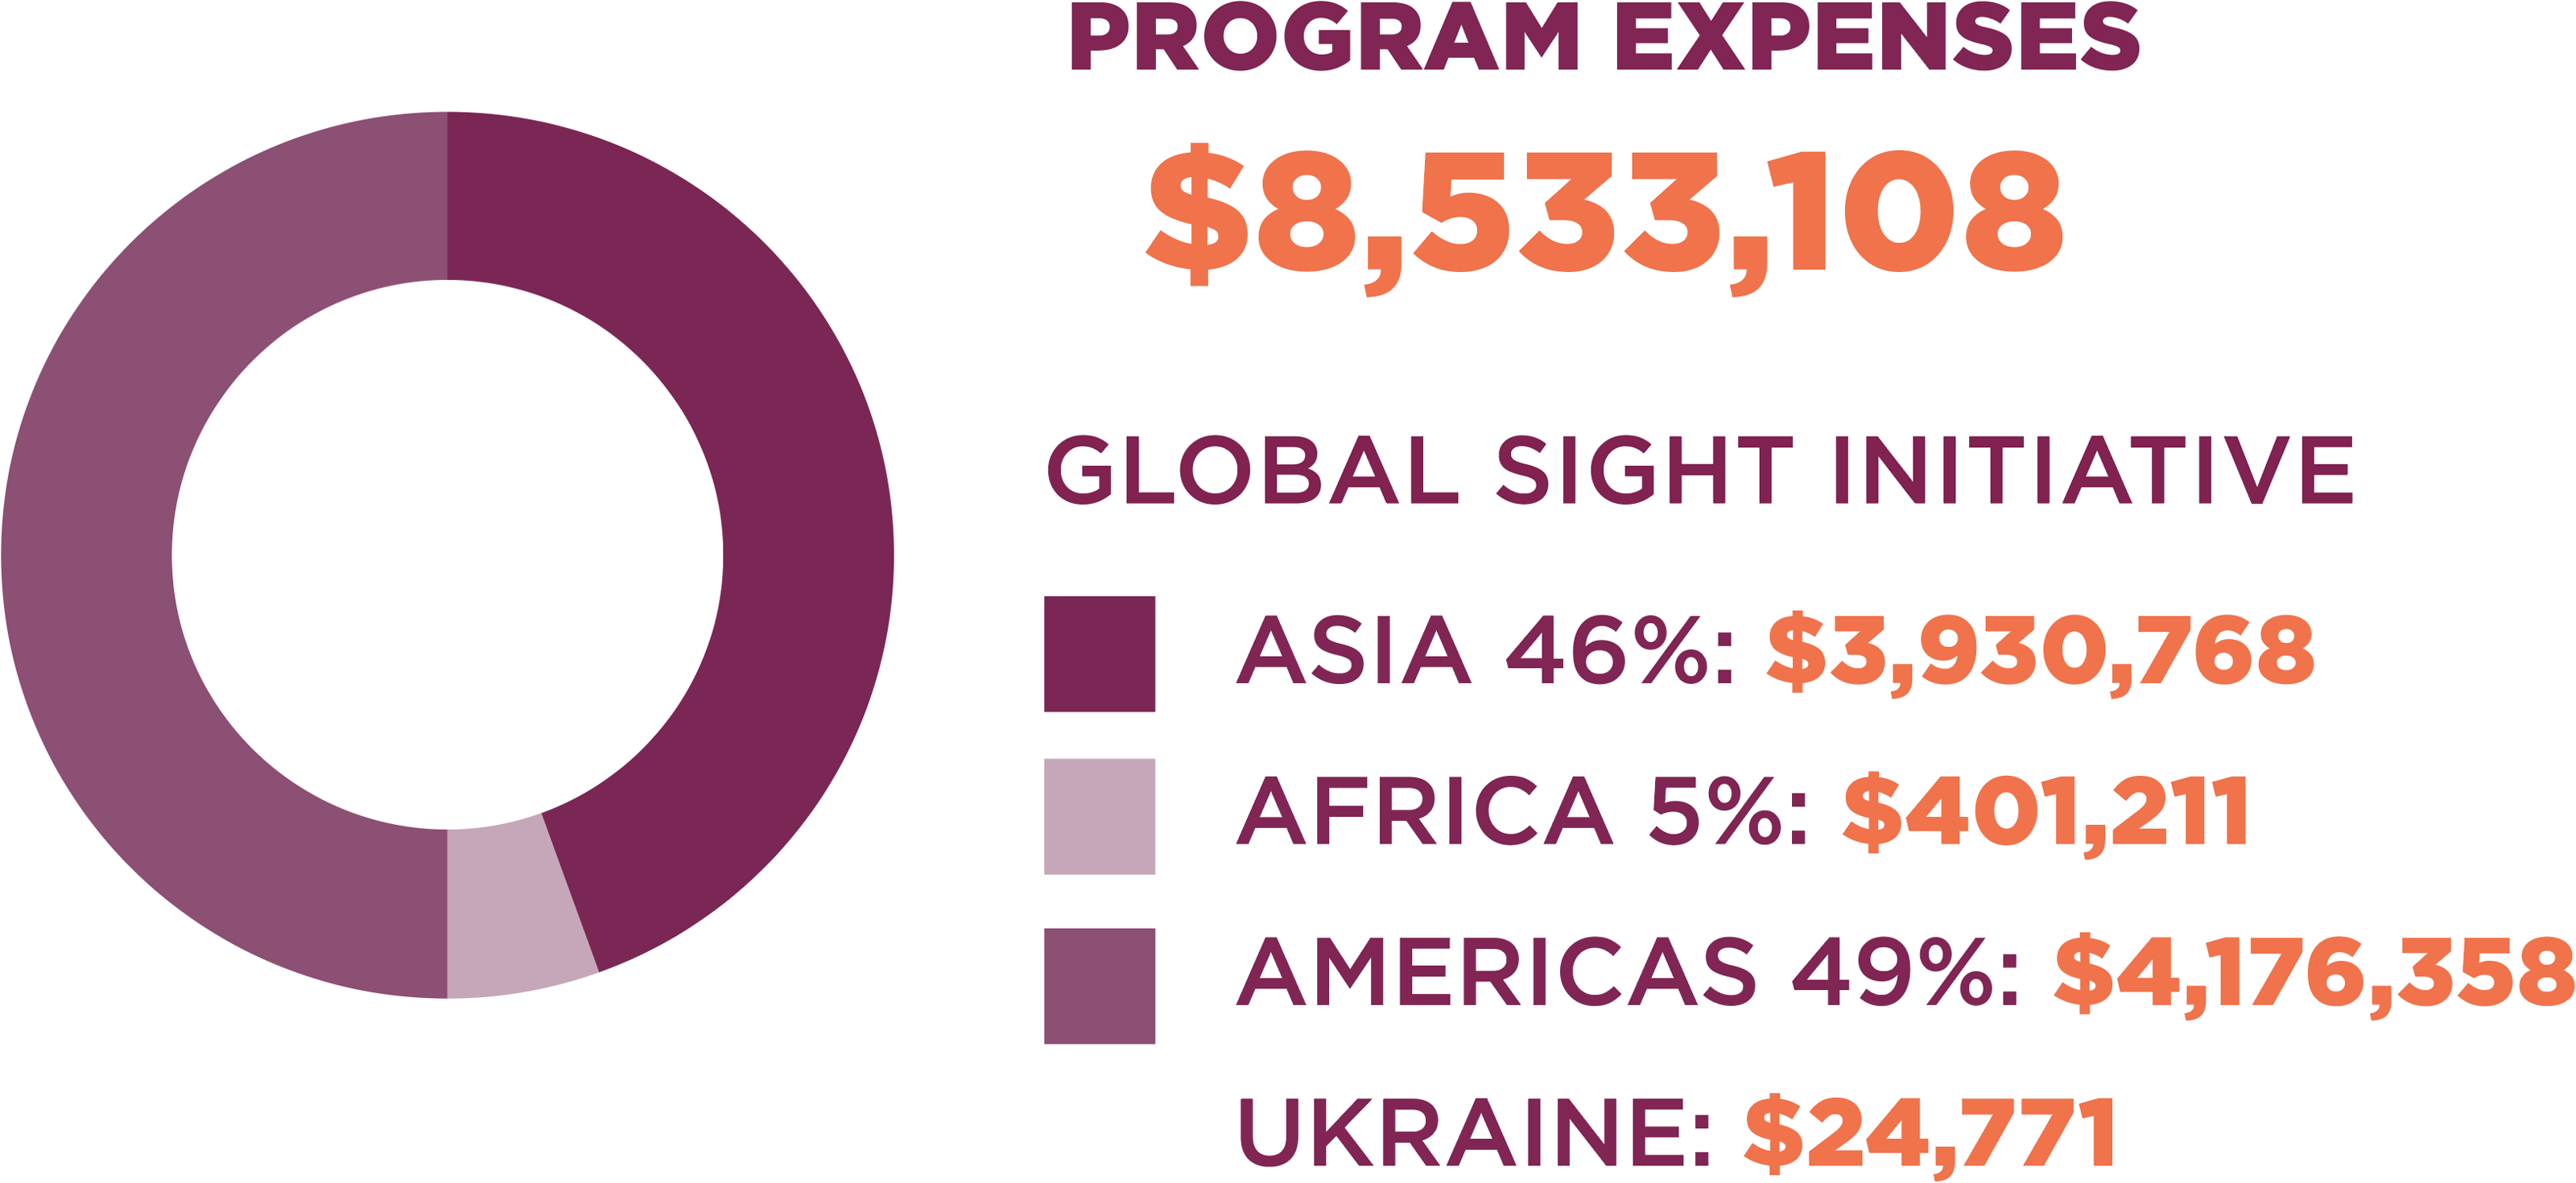 Program Expenses: $8,533,108. Asia 46%: $3,930,768. Africa 5%: $401,211. Americas 49%: $4,176,358. Ukraine: $24,771.